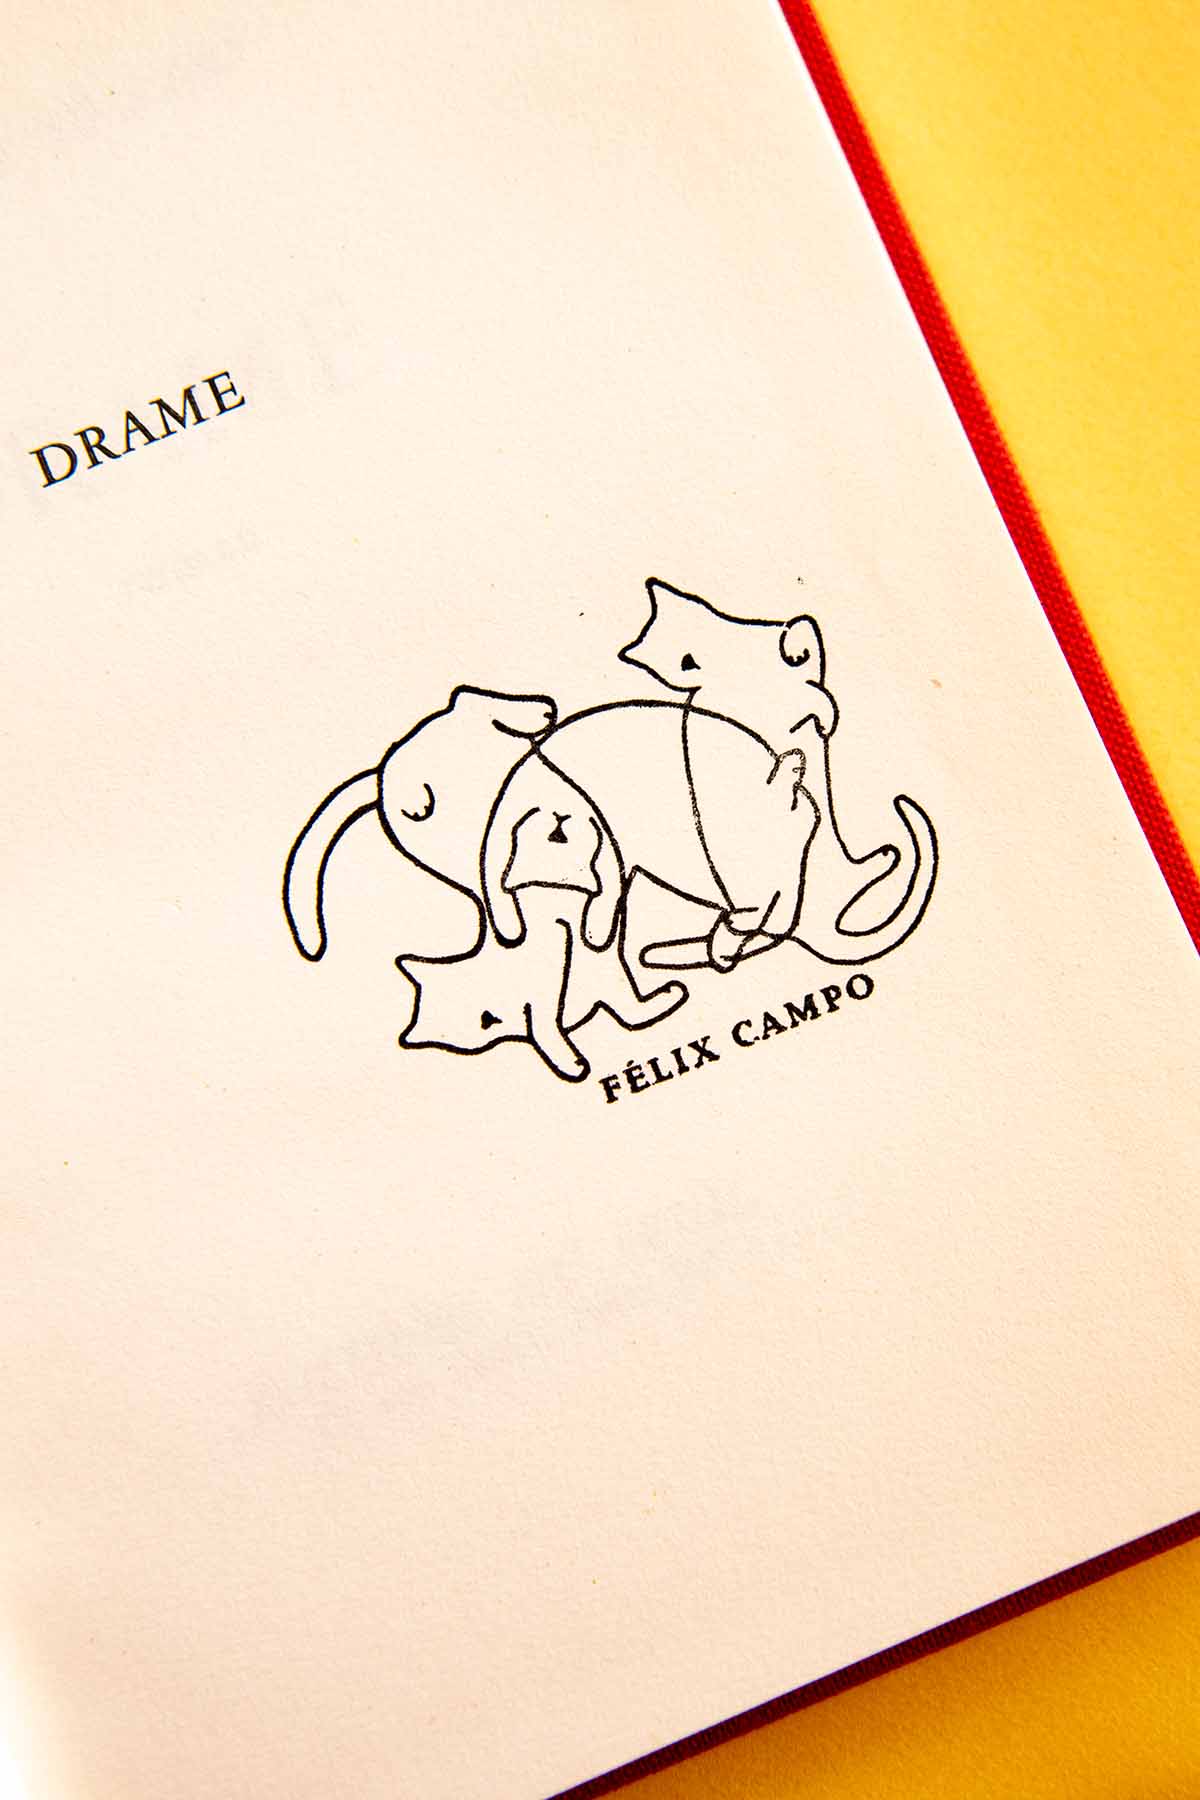 Ex-libris Gatos con una sencilla ilustración de tres gatos domésticos jugando, titulado "drame" de Félix Campo, sobre un fondo amarillo y rojo vibrante, de Les Tampons de Roser.